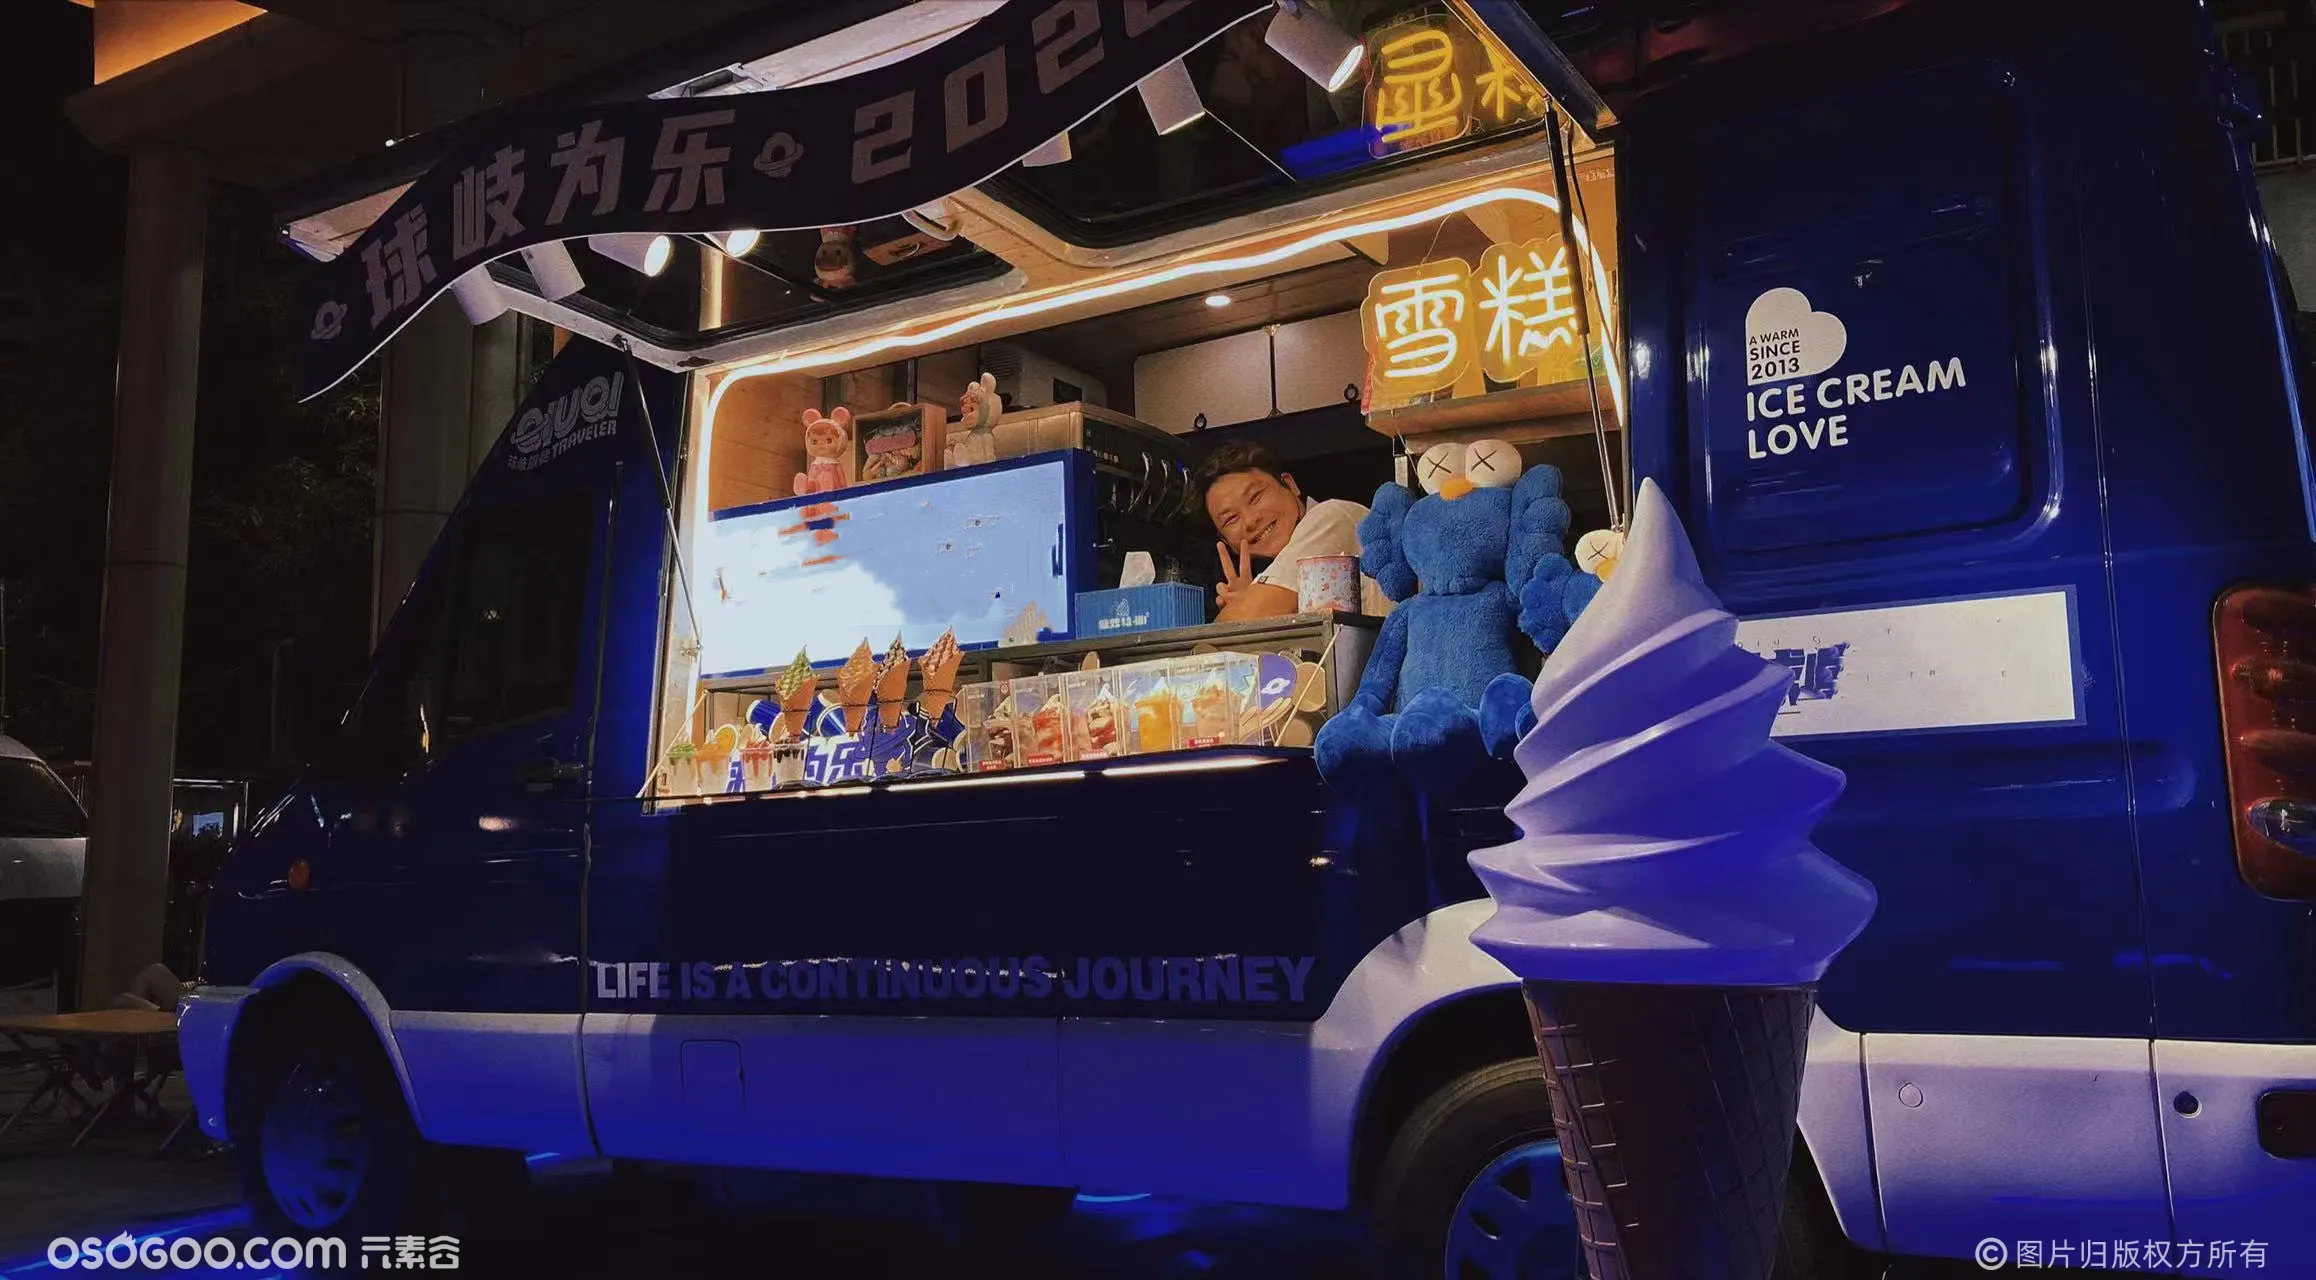 雪糕车租赁冰淇淋车出租网红餐车广告车展示车